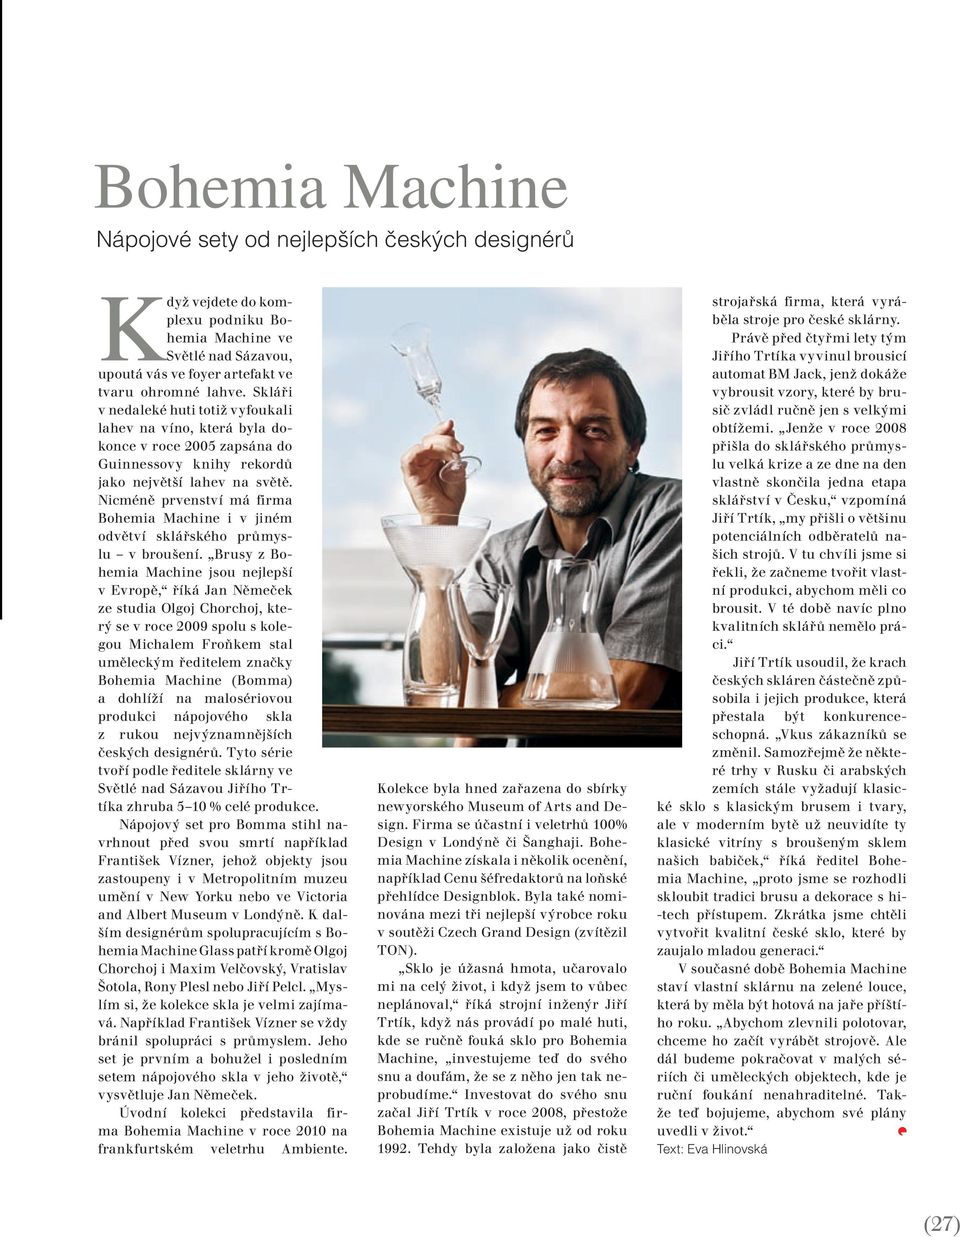 Nicméně prvenství má firma Bohemia Machine i v jiném odvětví sklářského průmyslu v broušení.